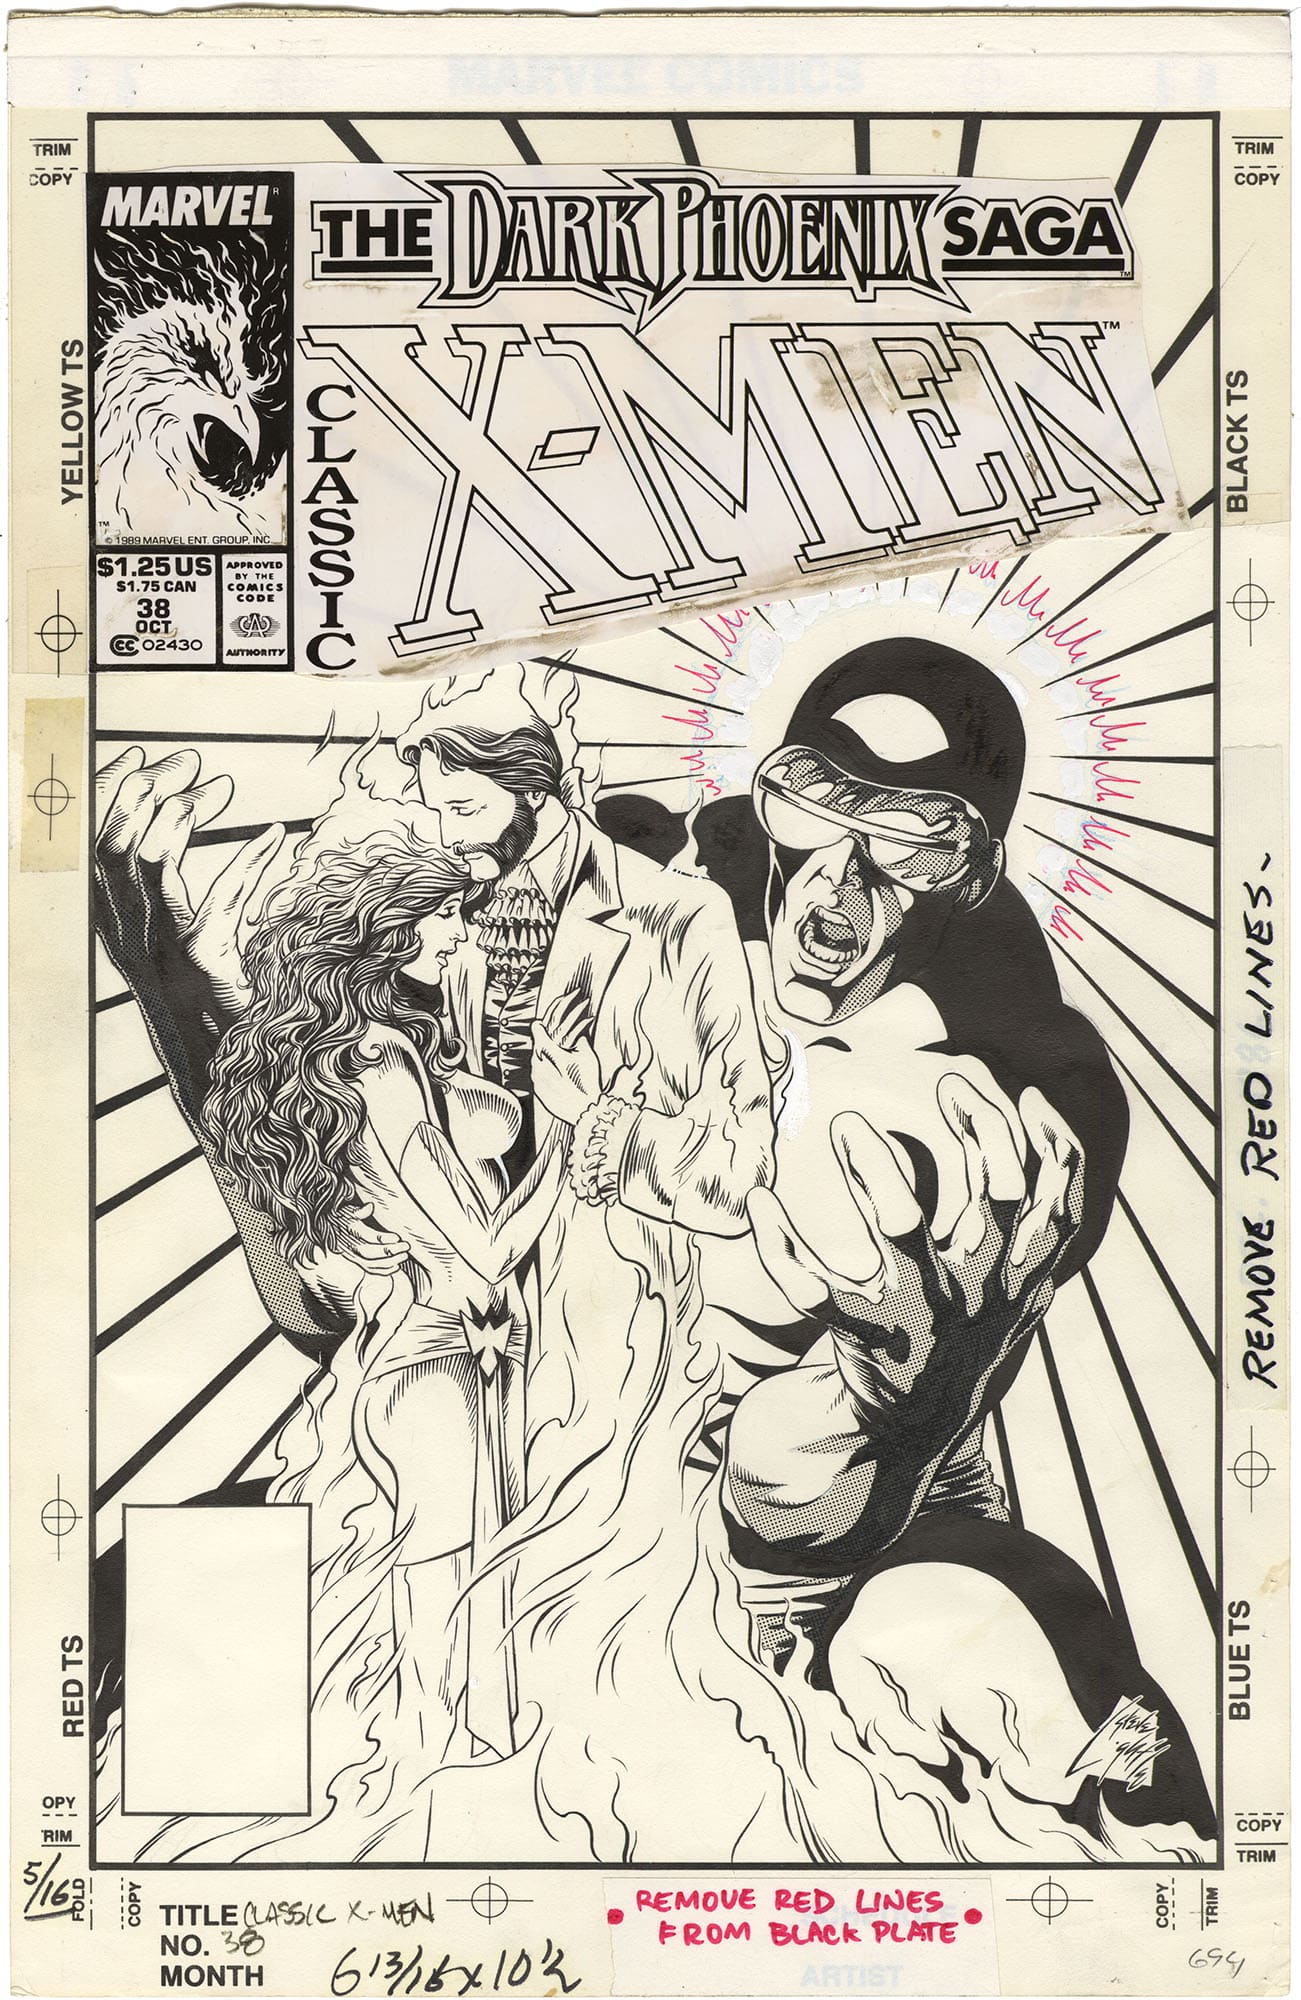 Classic X-Men #38 Cover